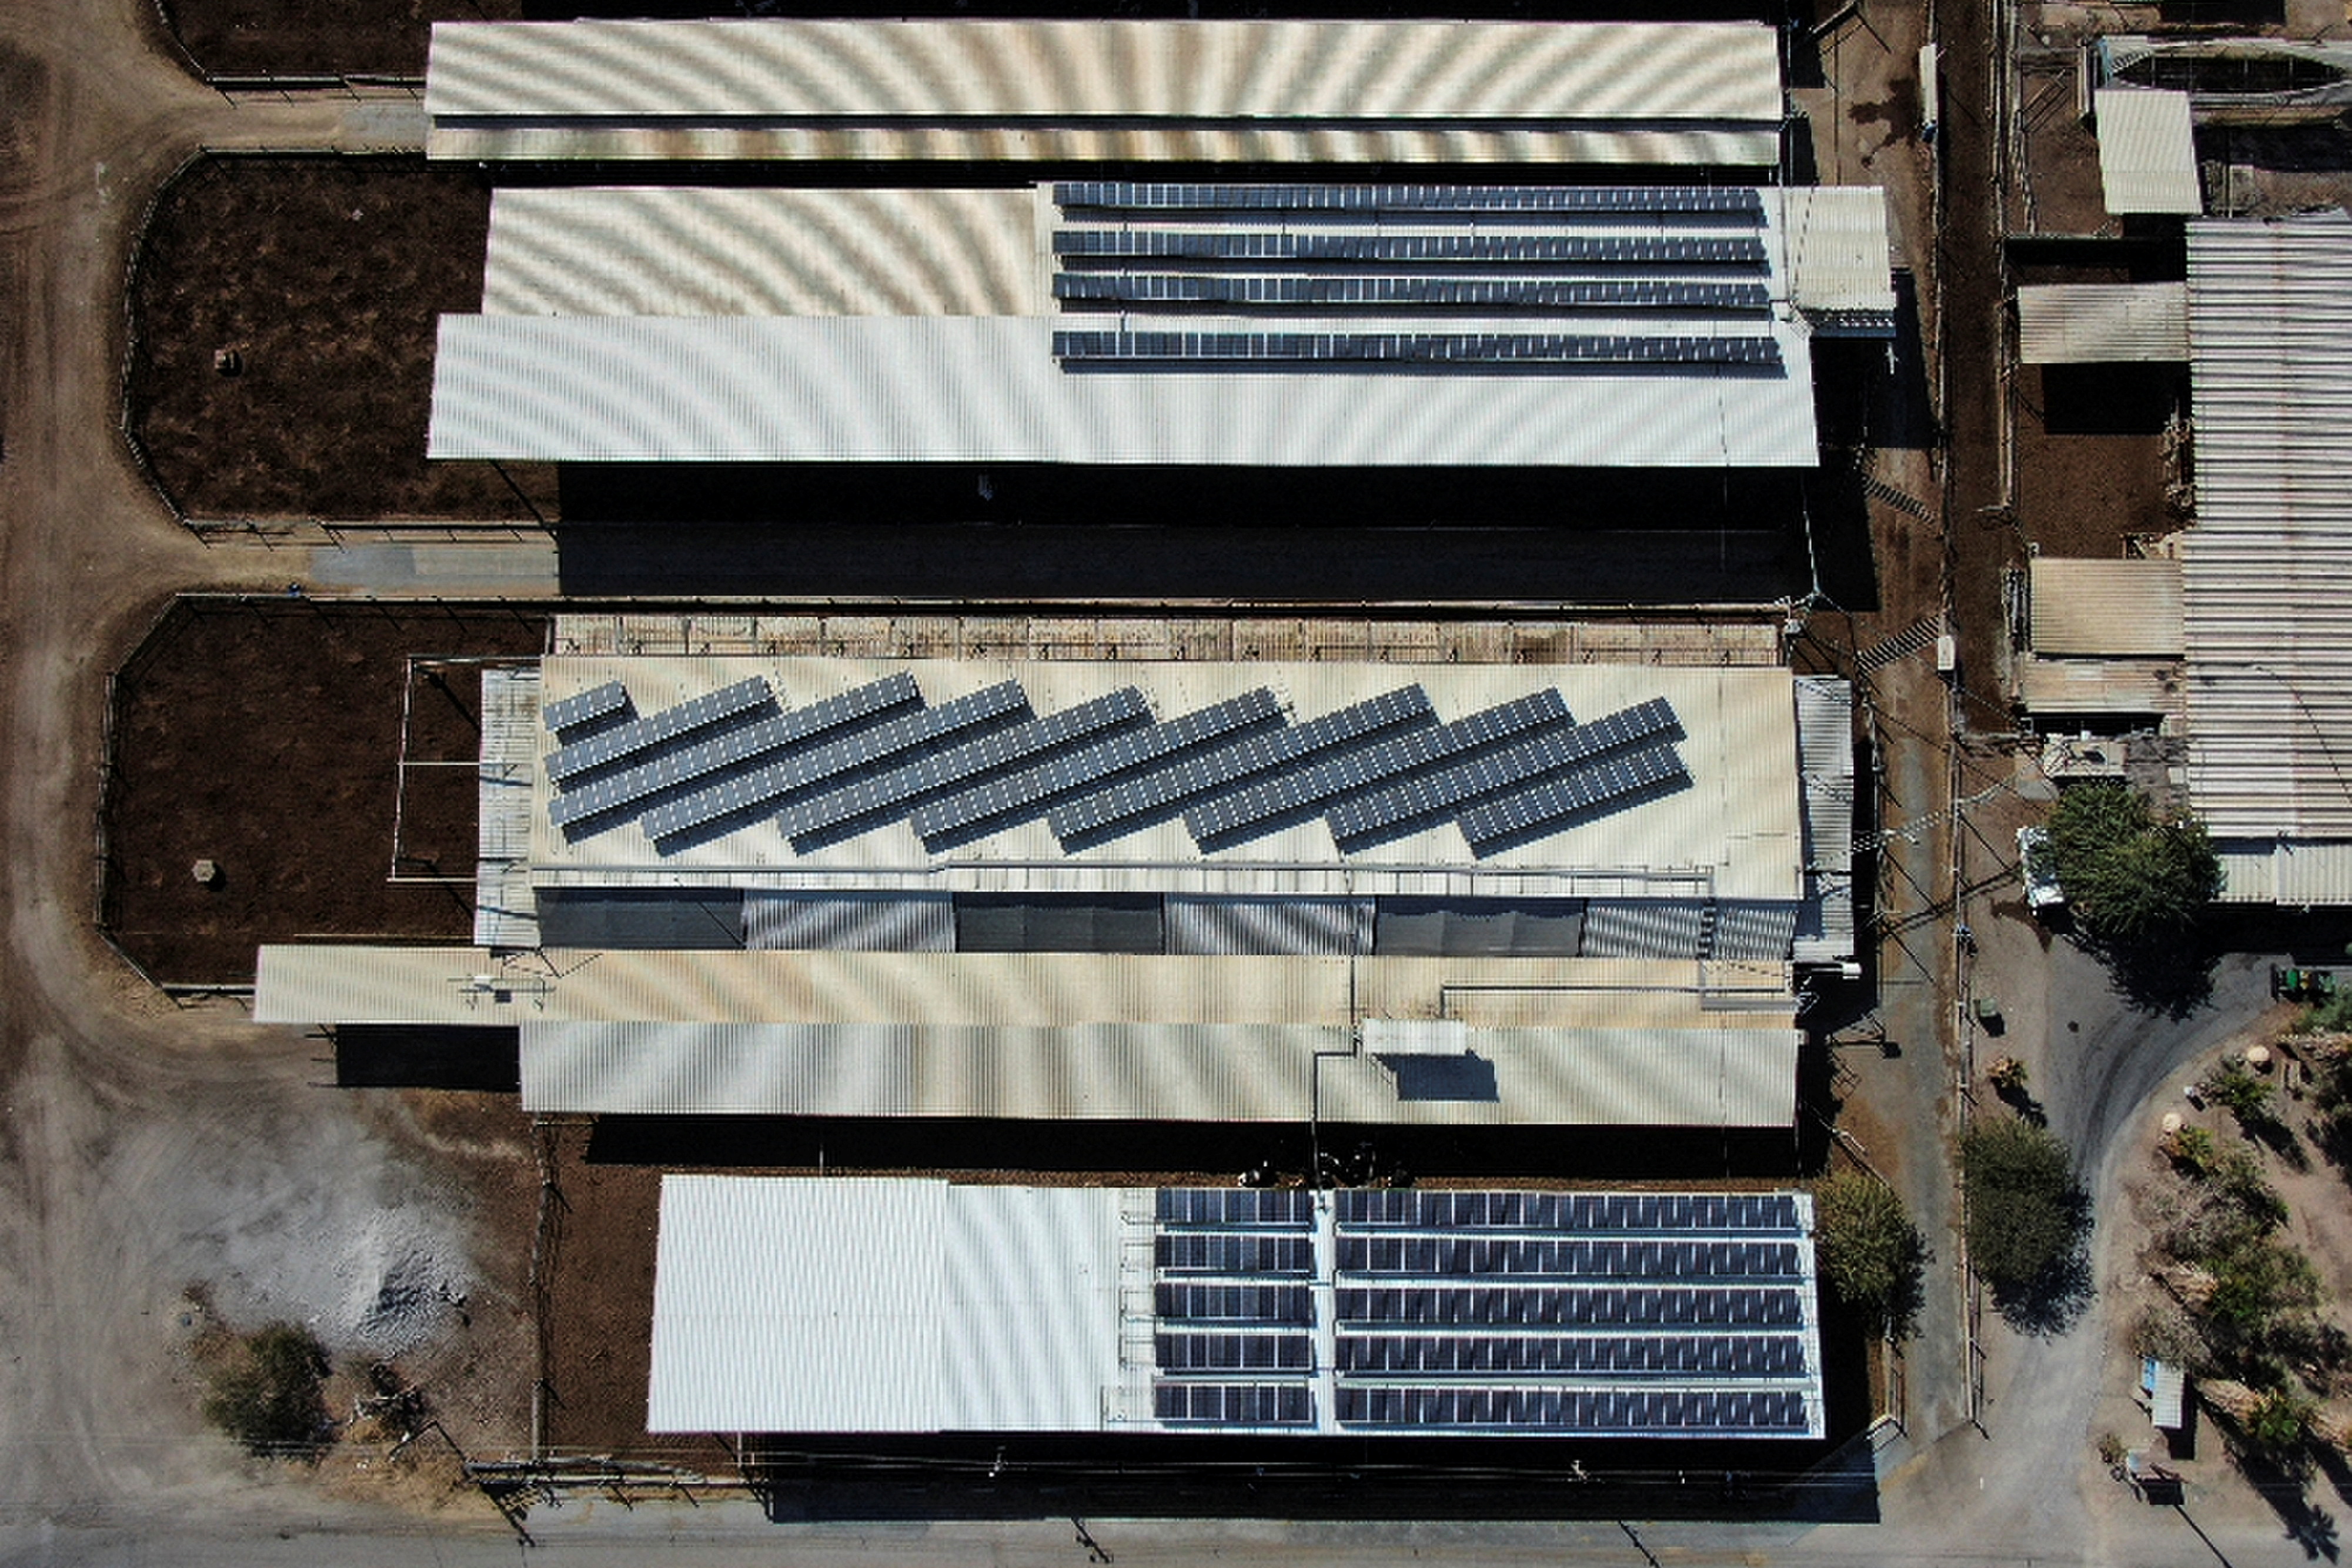 Uma vista aérea de estábulos nas instalações comerciais de Augwind, que fornece uma nova solução tecnológica para armazenamento e produção de energia em uma mudança de combustíveis fósseis, em favor de fontes de energia renováveis, no Kibutz Yahel, Israel em 30 de novembro de 2021. REUTERS / Ammar Awad